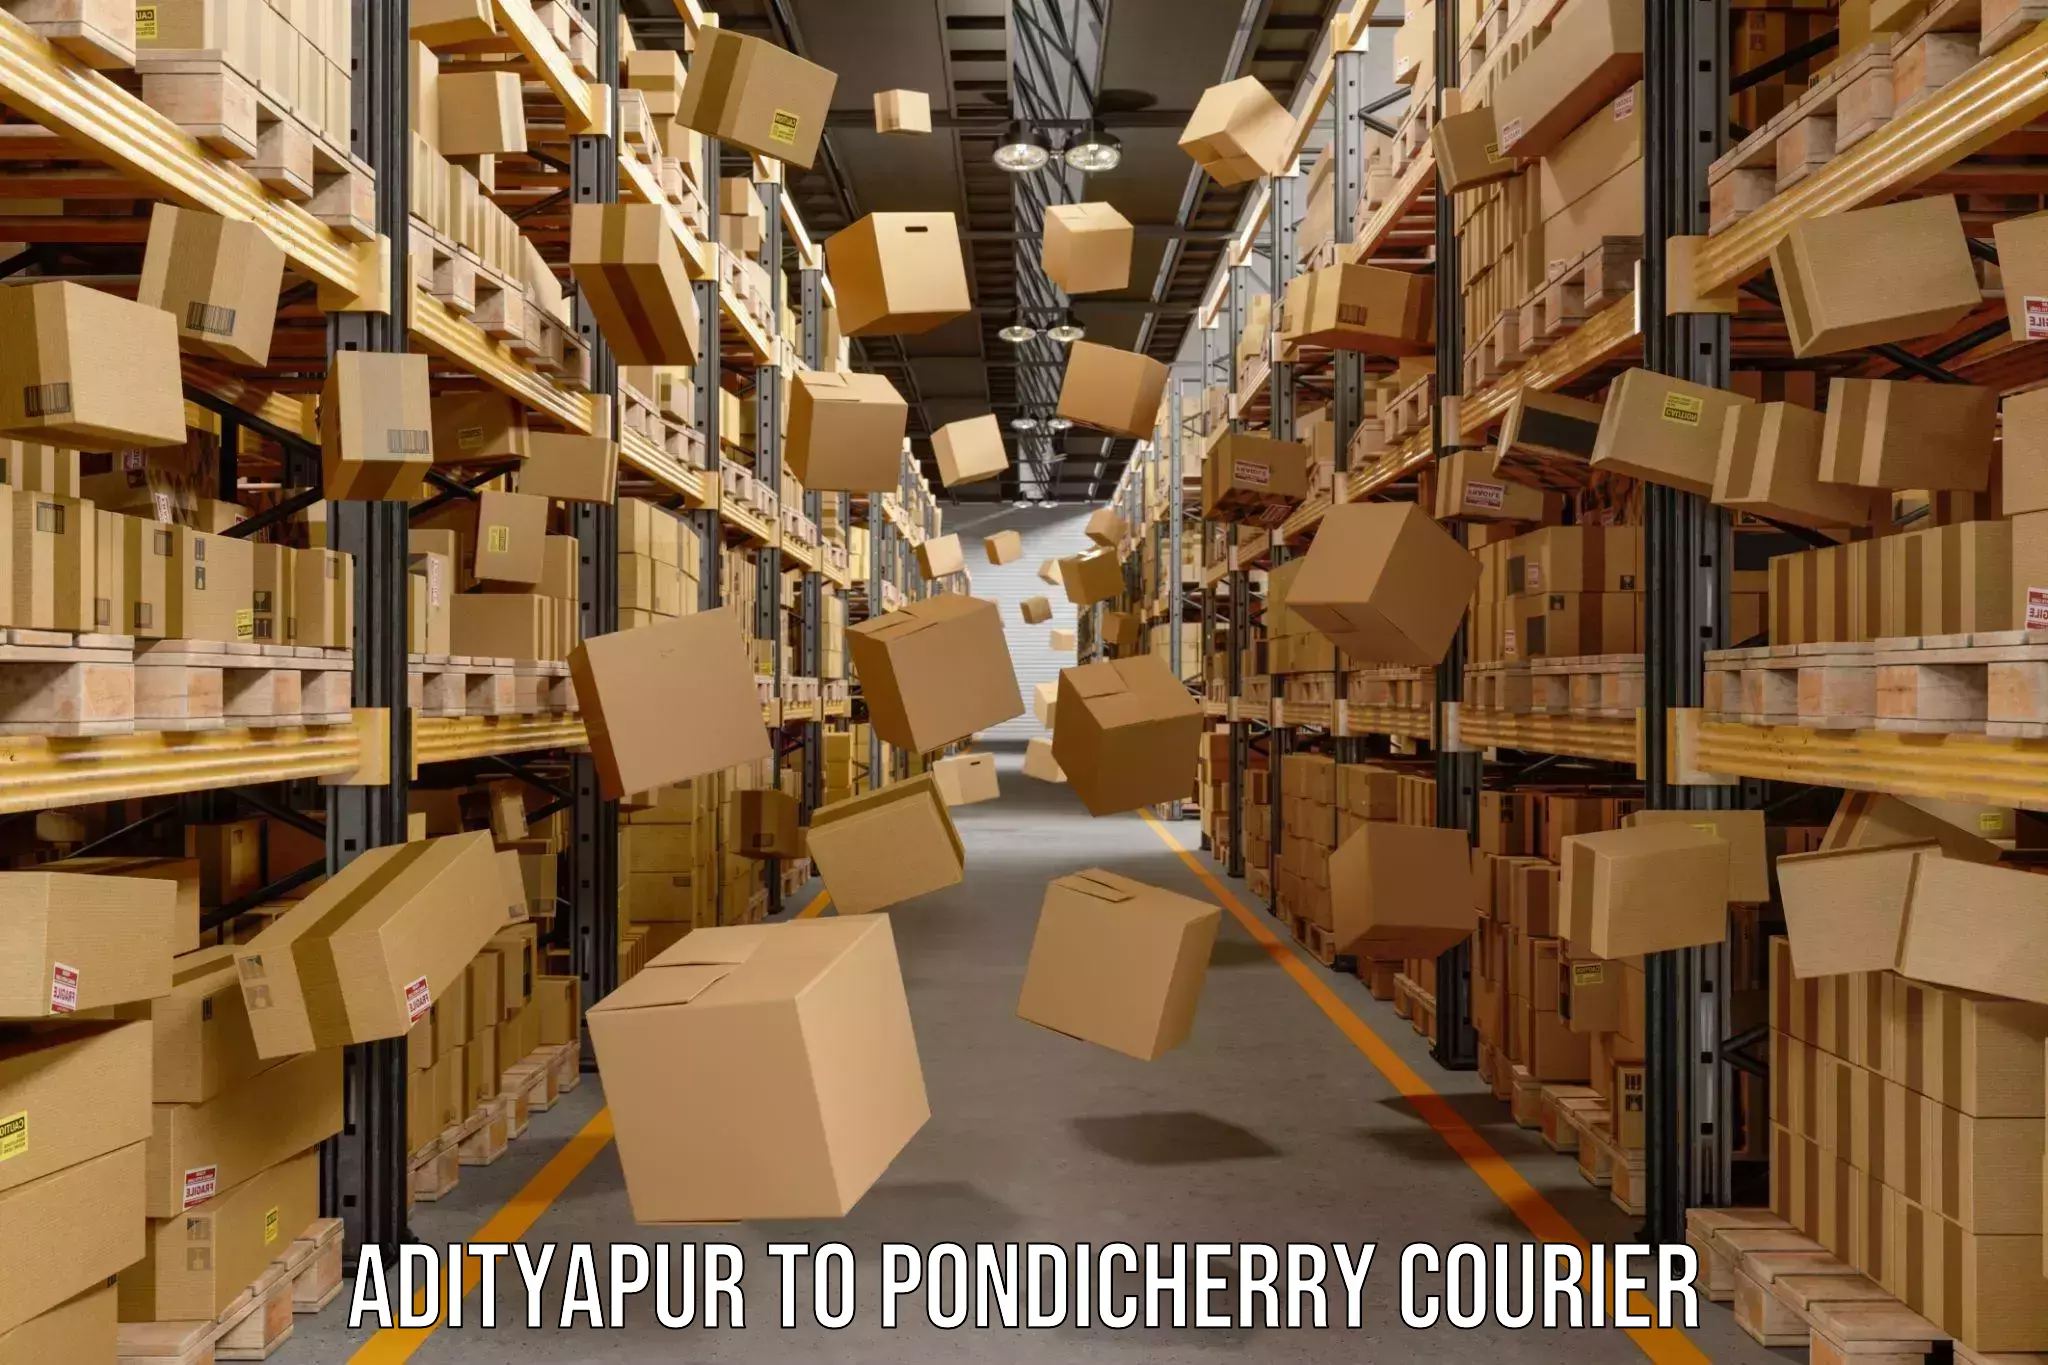 High-speed parcel service Adityapur to Pondicherry